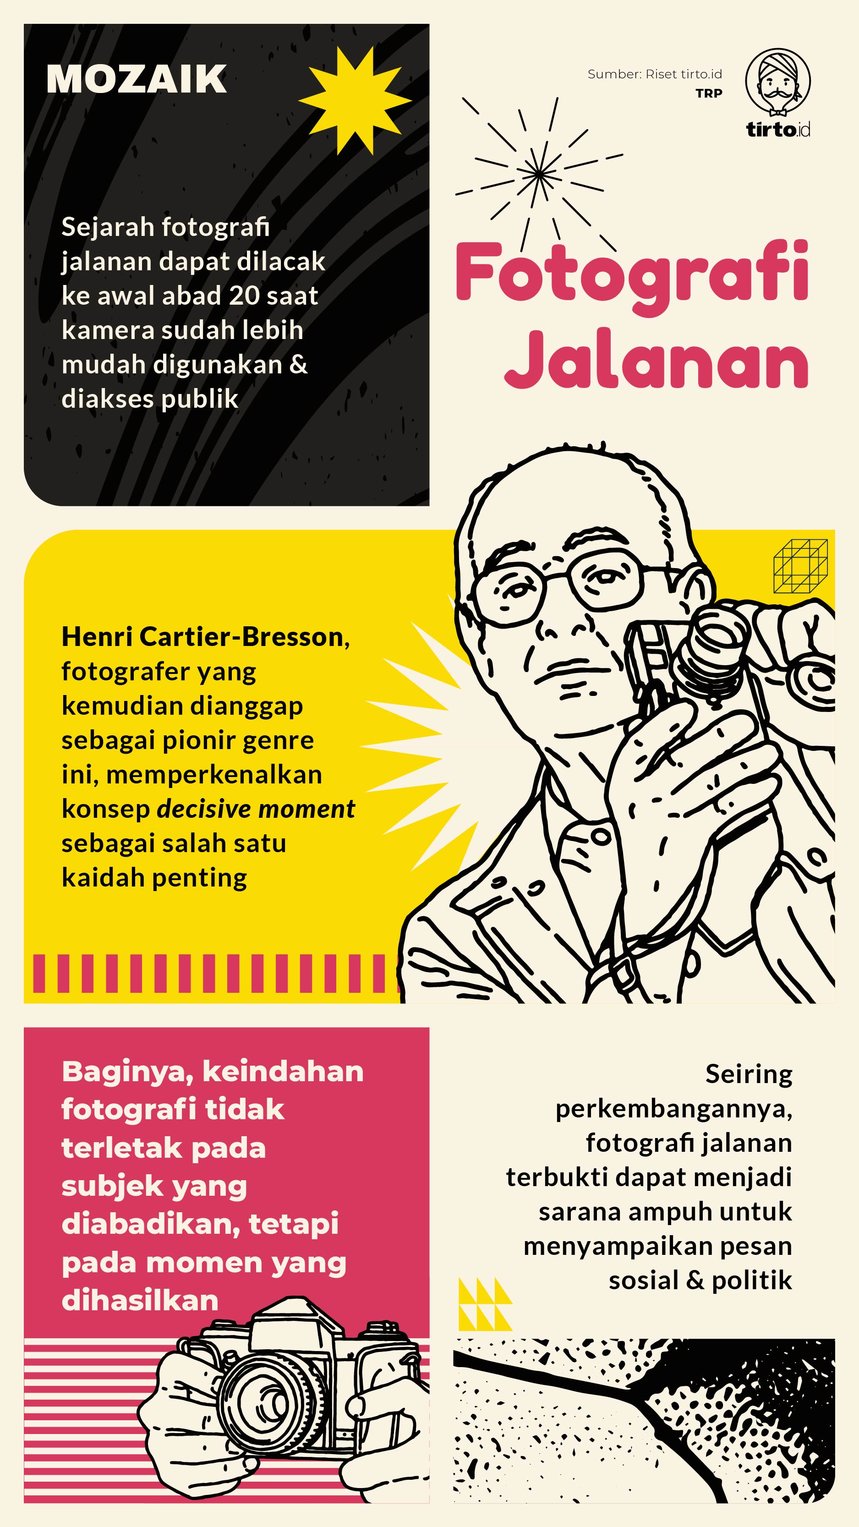 Infografik Mozaik Fotografi Jalanan